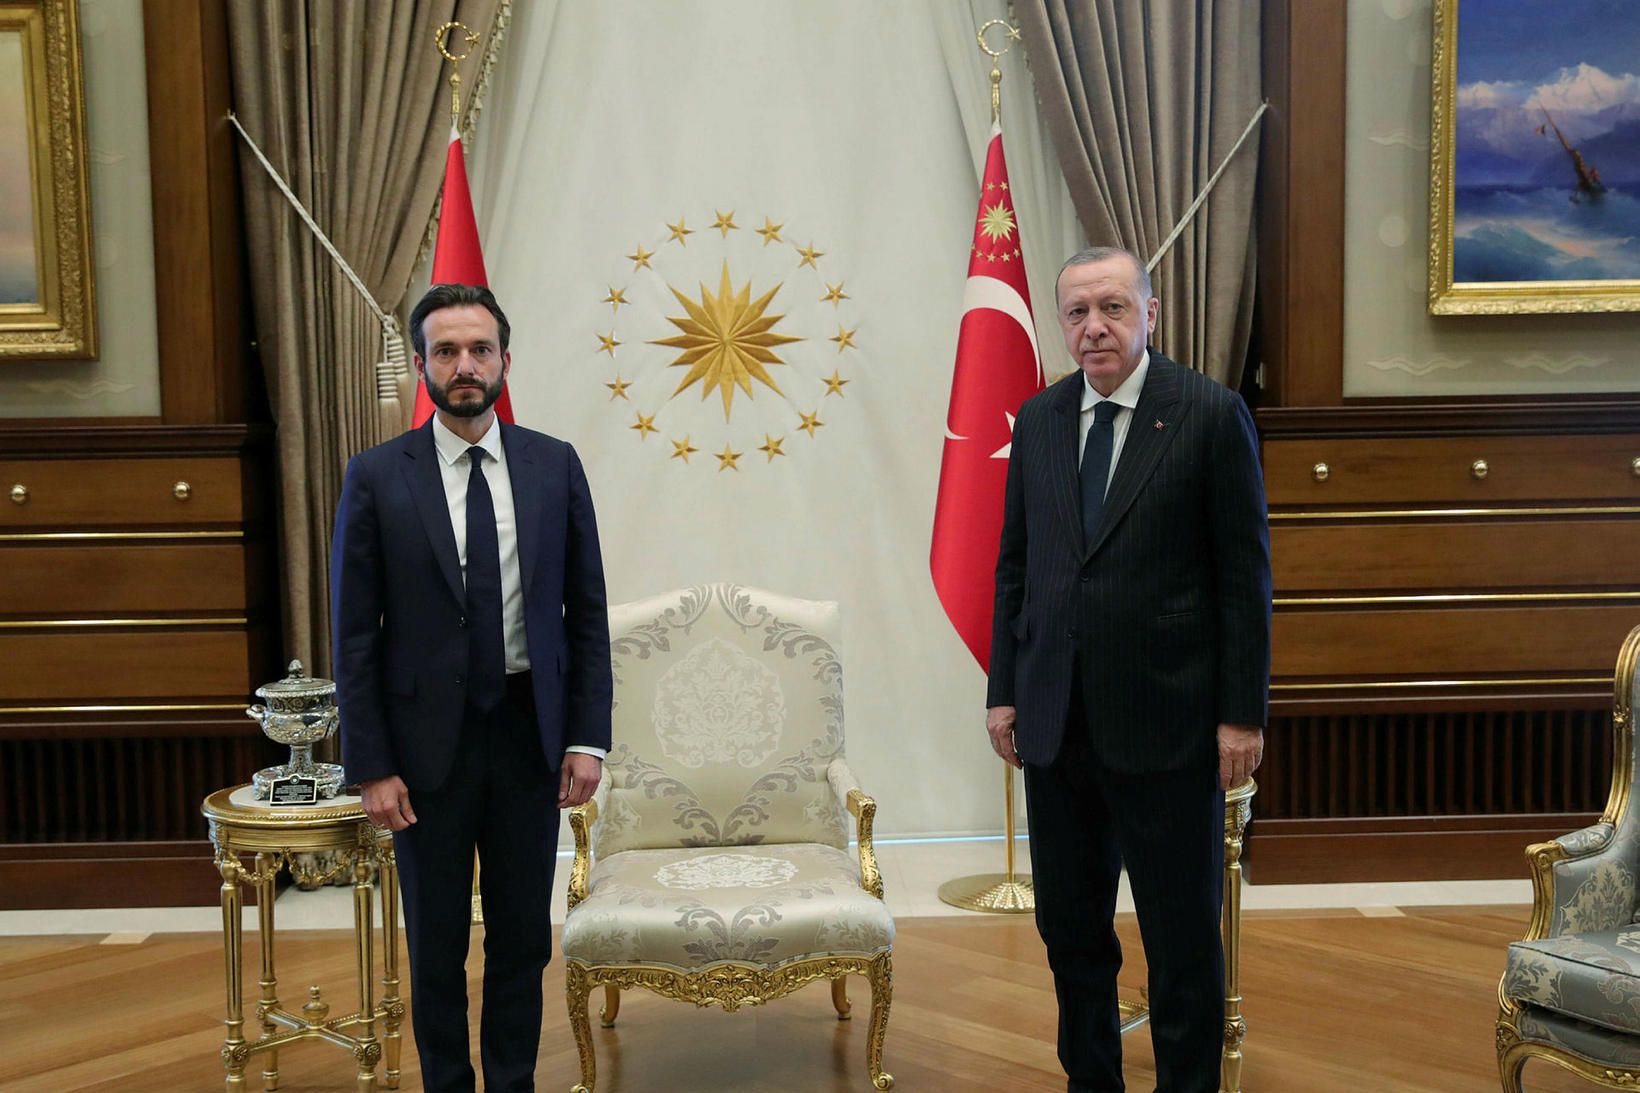 Róbert Spanó, forseti Mannréttindadómstóls Evrópu, og Recep Erdogan, forseti Tyrklands.